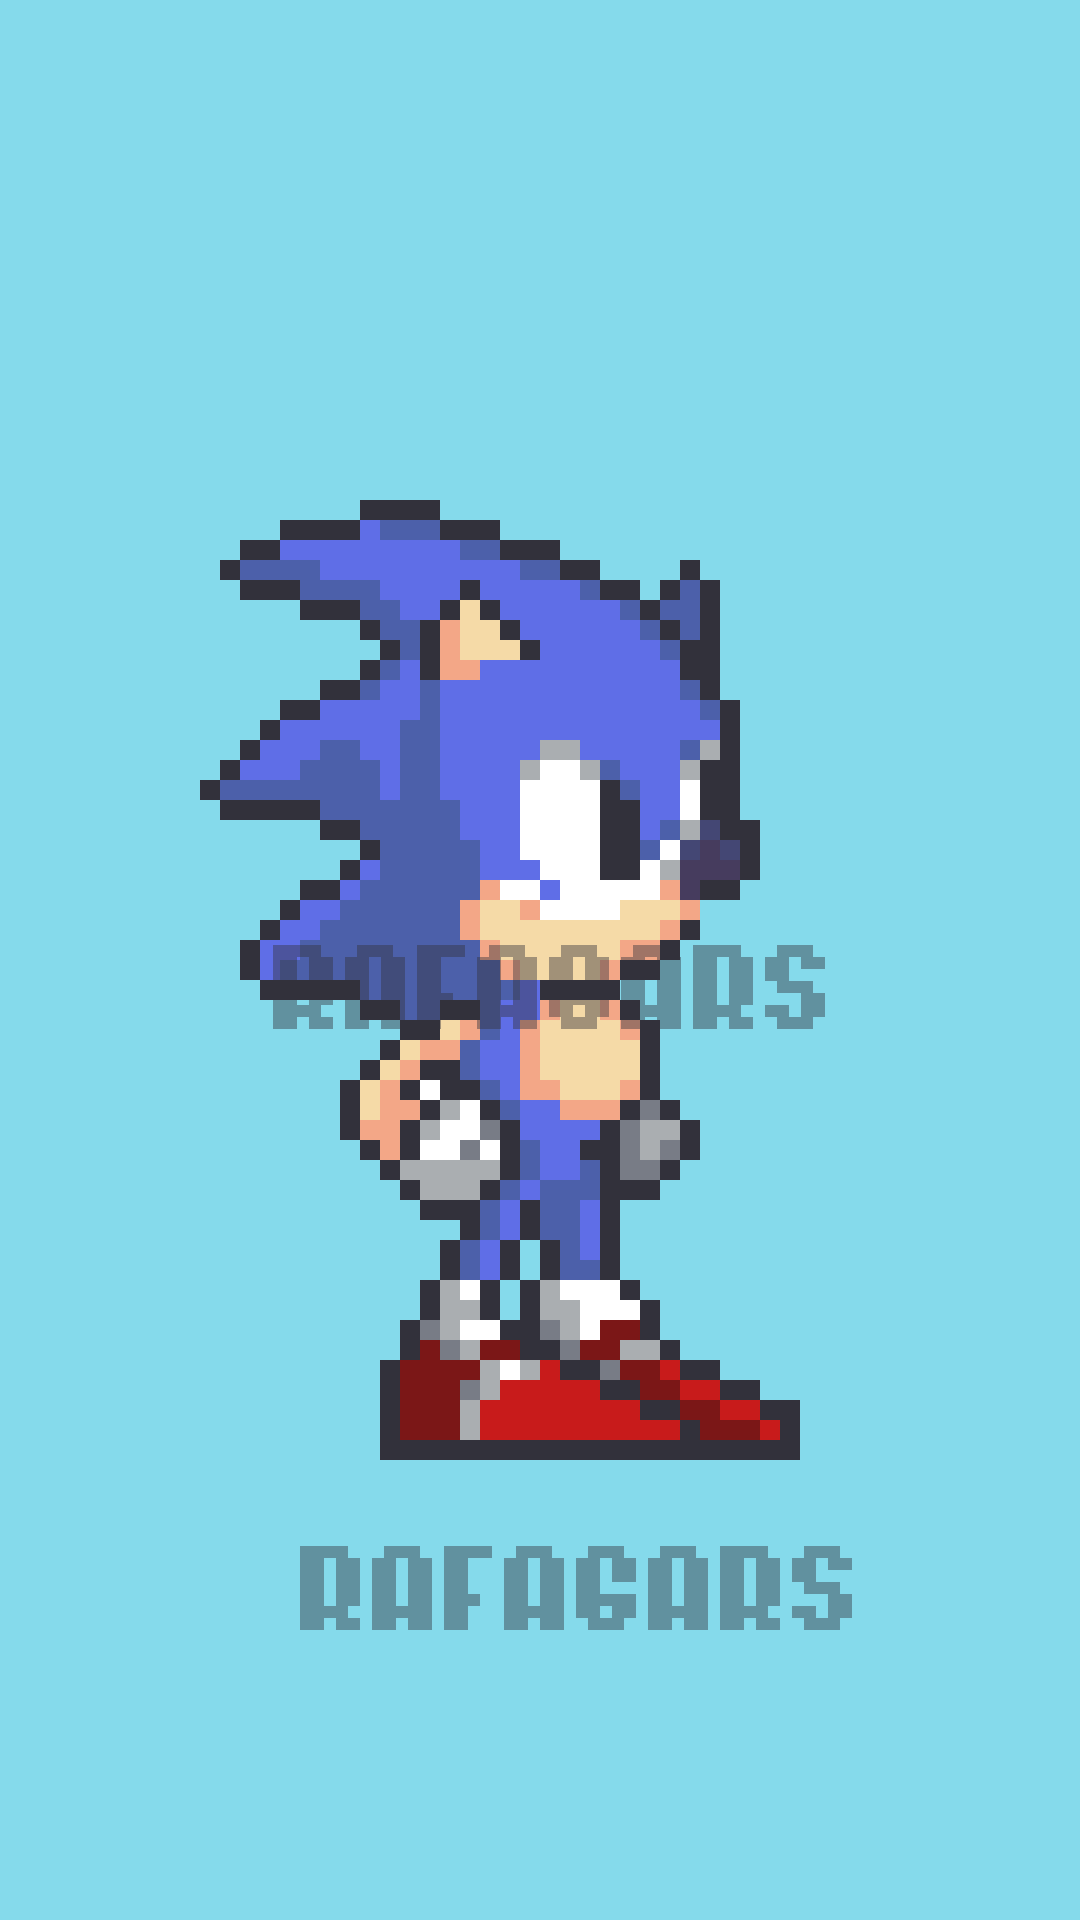 Sonic: Pixel Art